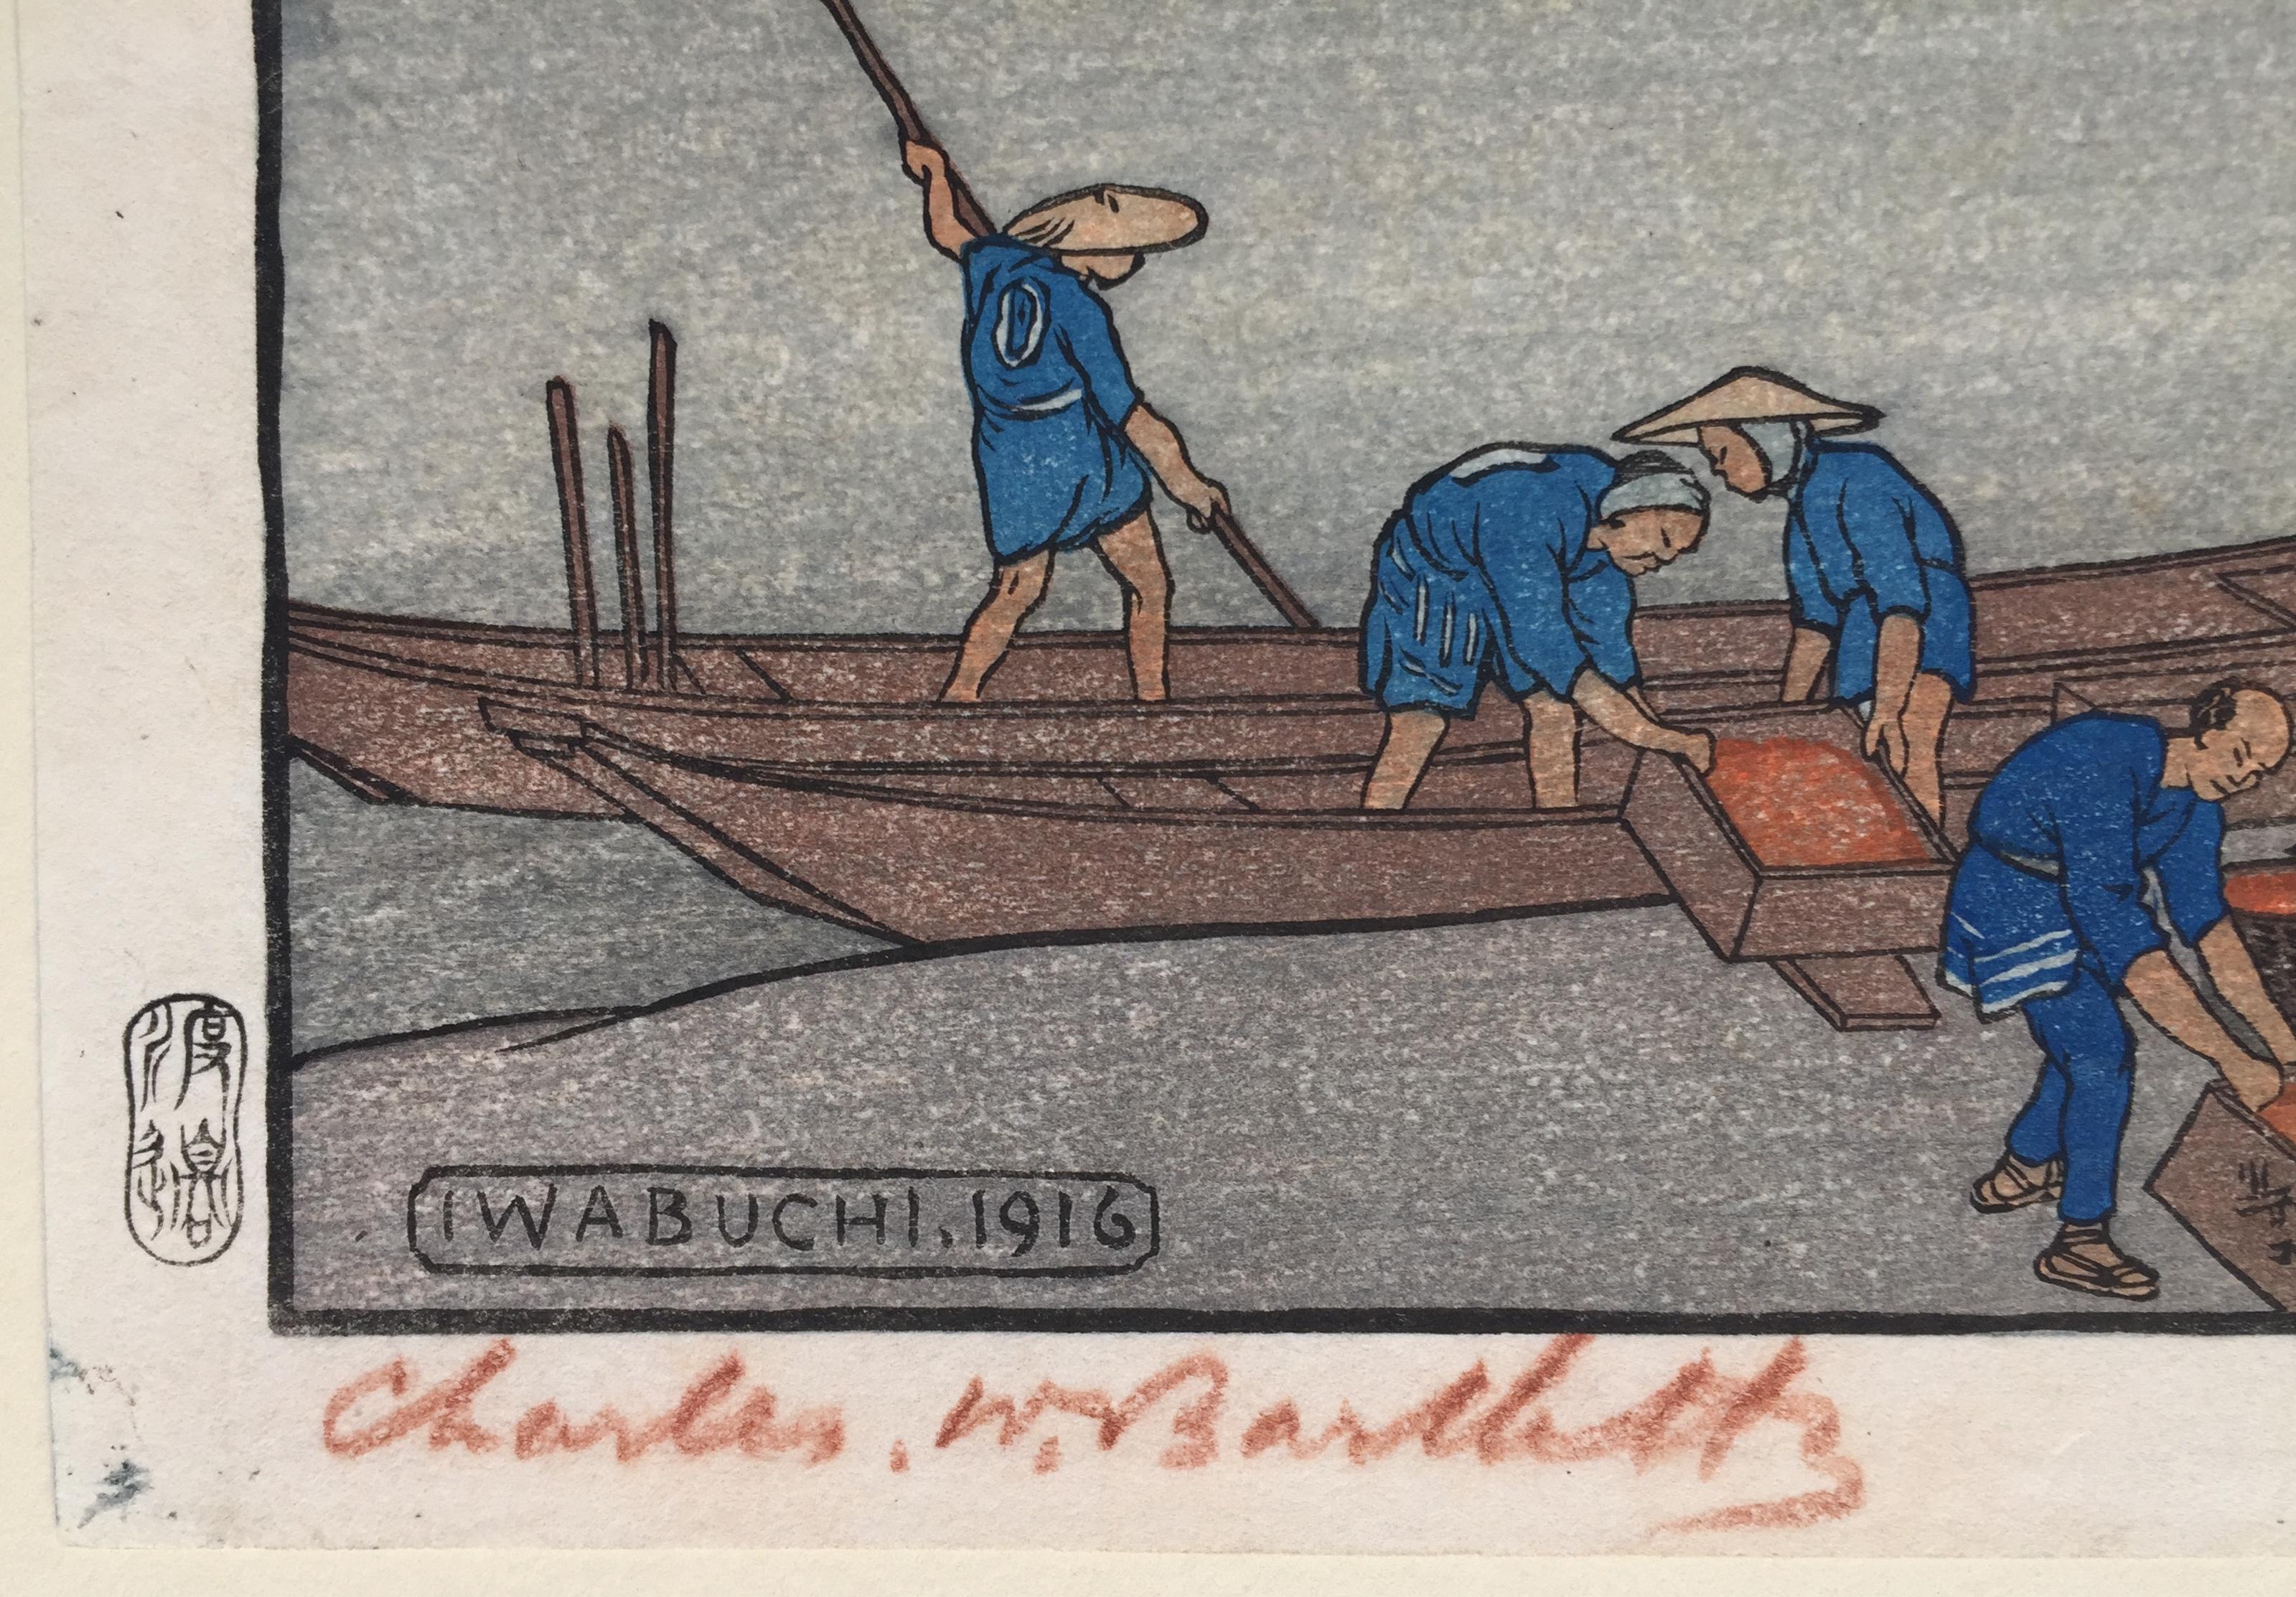 Iwabuchi - Print by Charles W. Bartlett